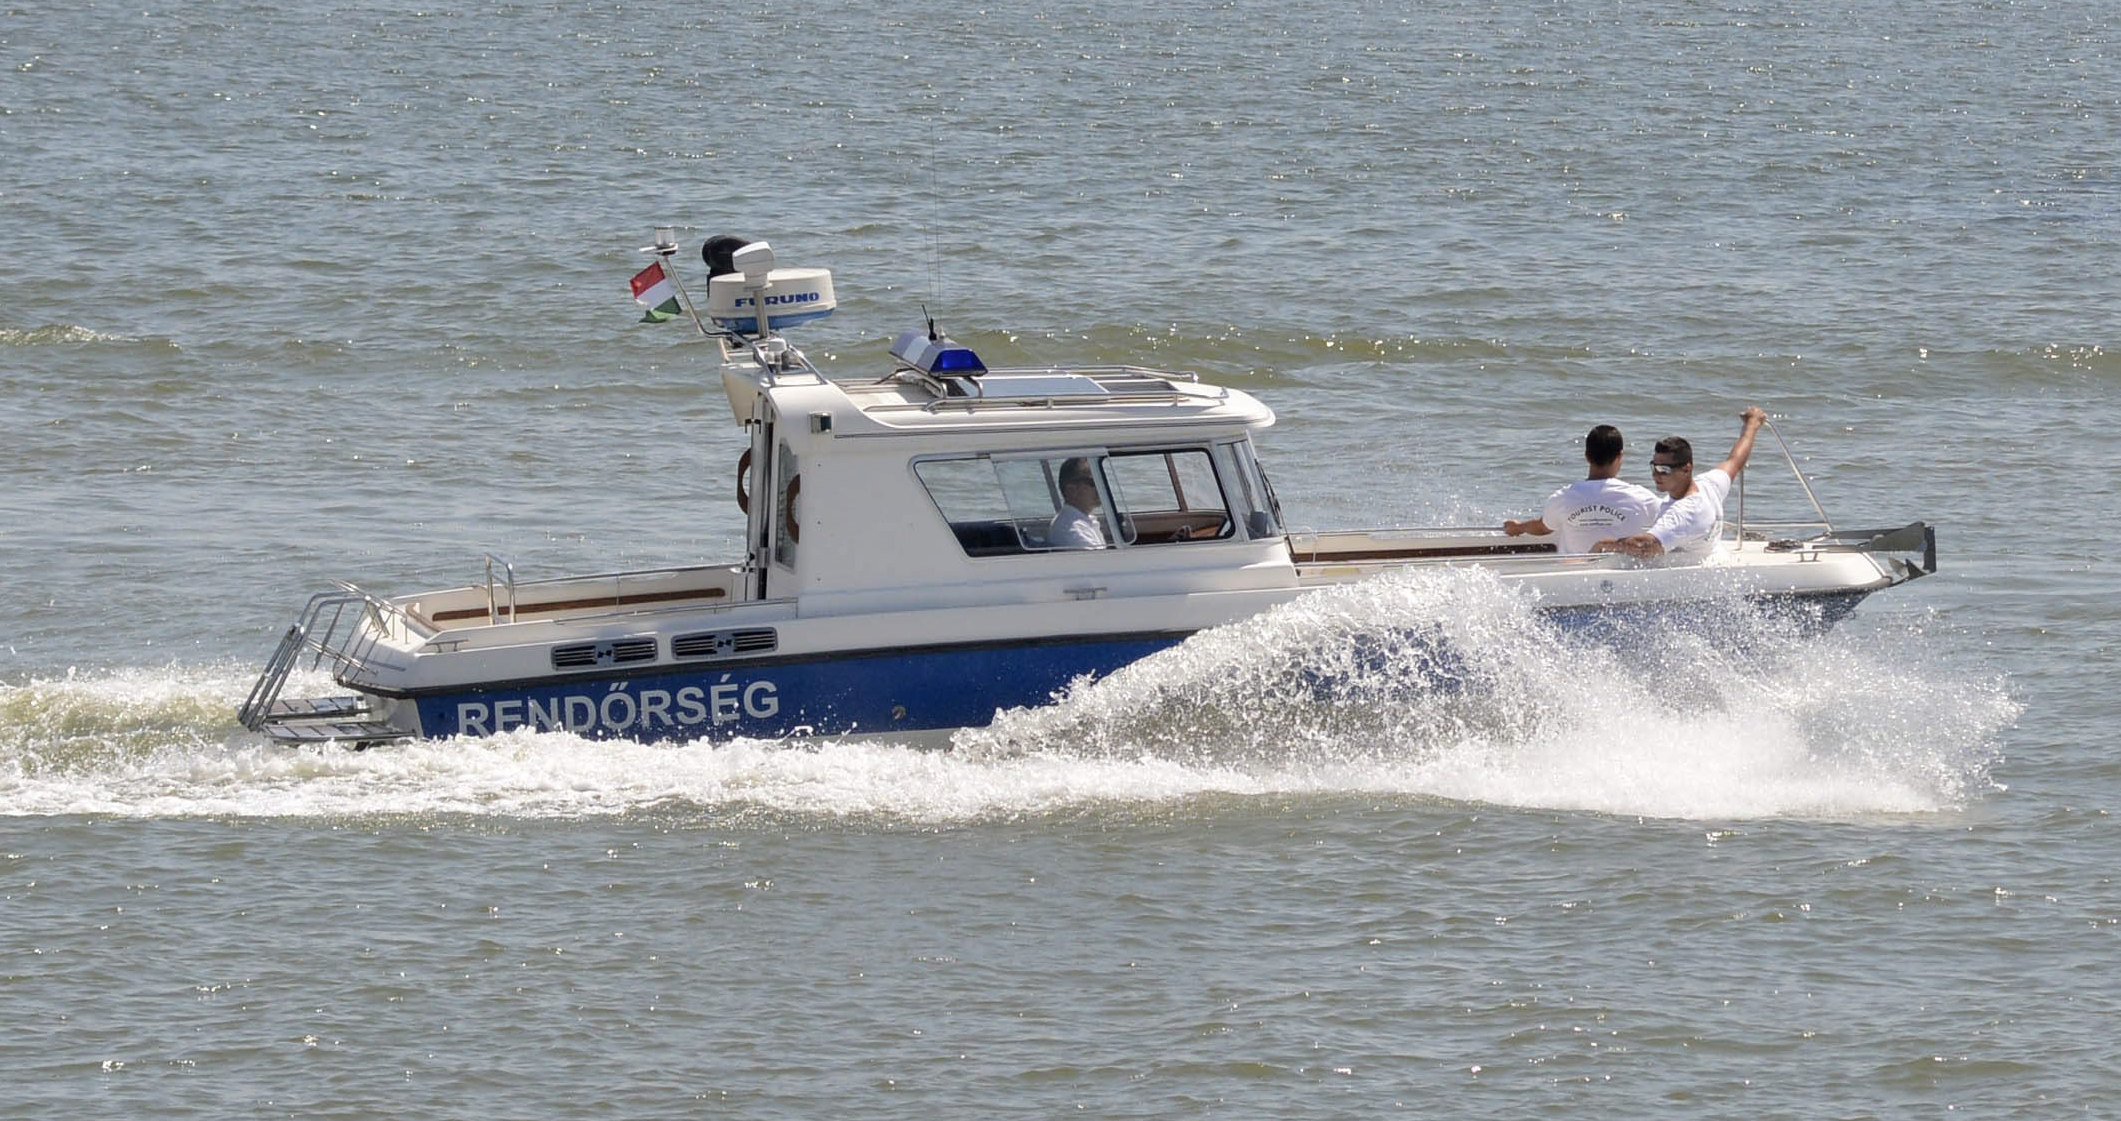 26 éves váci nő lopott csónakkal sodródott a Dunán: a rendőrök mentették  meg - Blikk